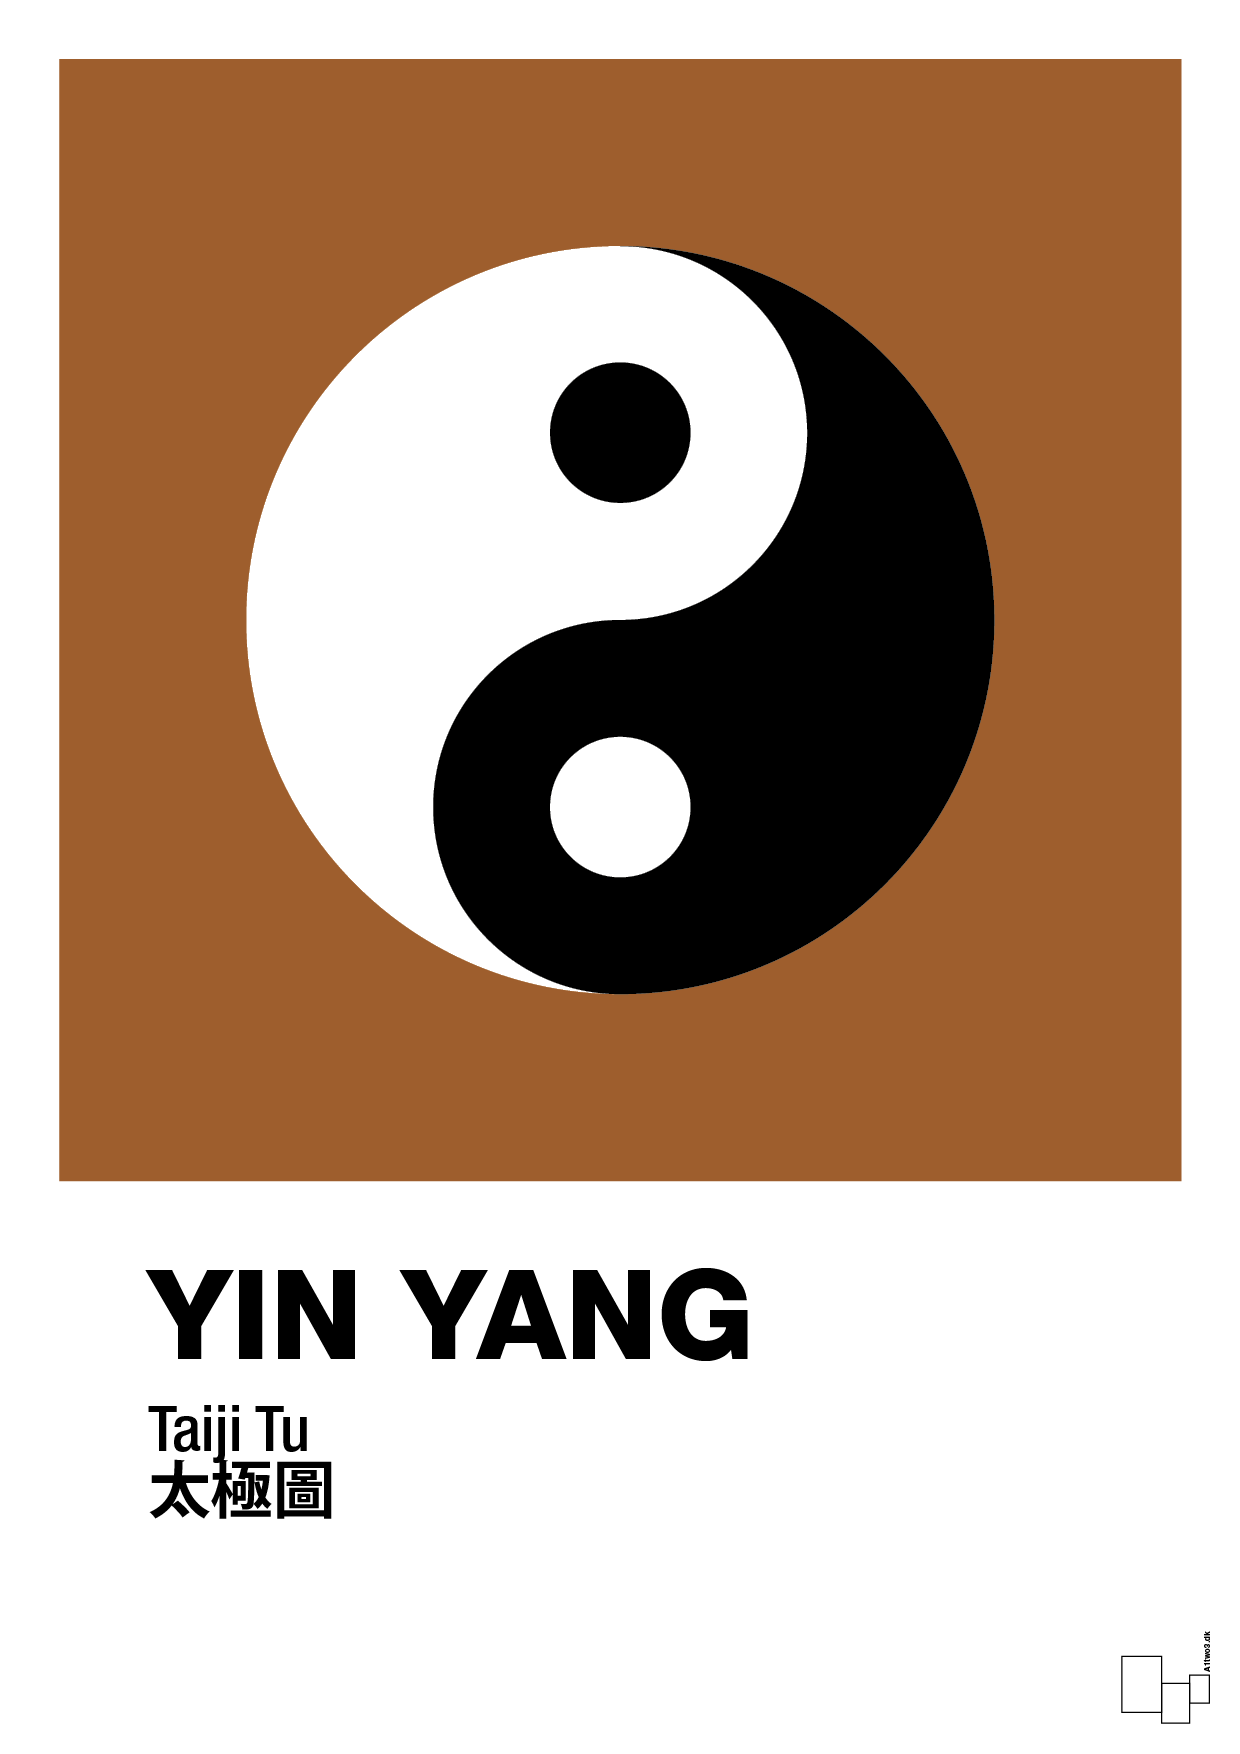 yin yang - Plakat med Videnskab i Cognac